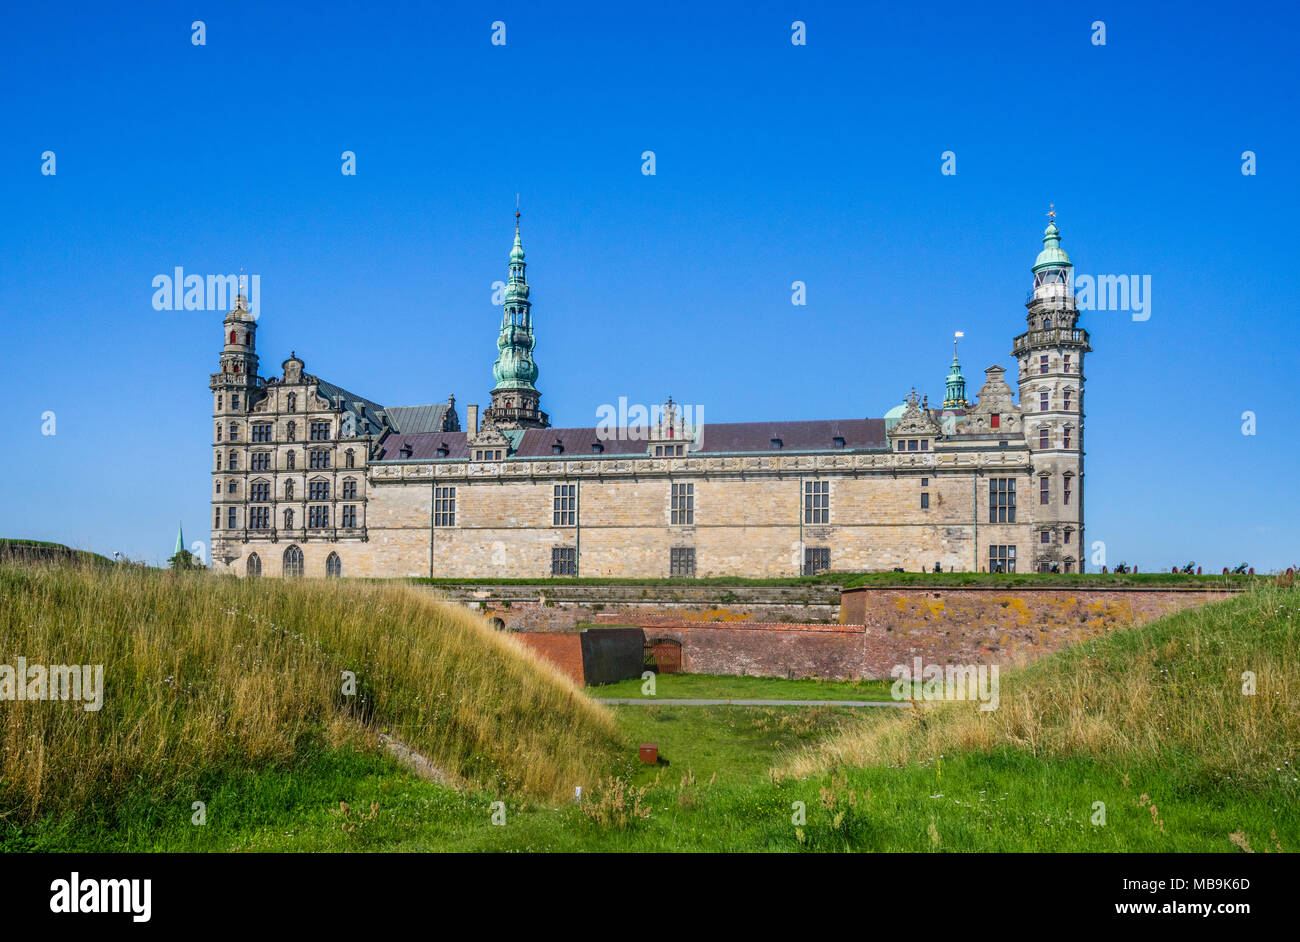 Le Château de Kronborg massif s'élève derrière les murs, le magnifique défense château Renaissance est immortalisé comme Elseneur dans William Shakespeare Haml Banque D'Images